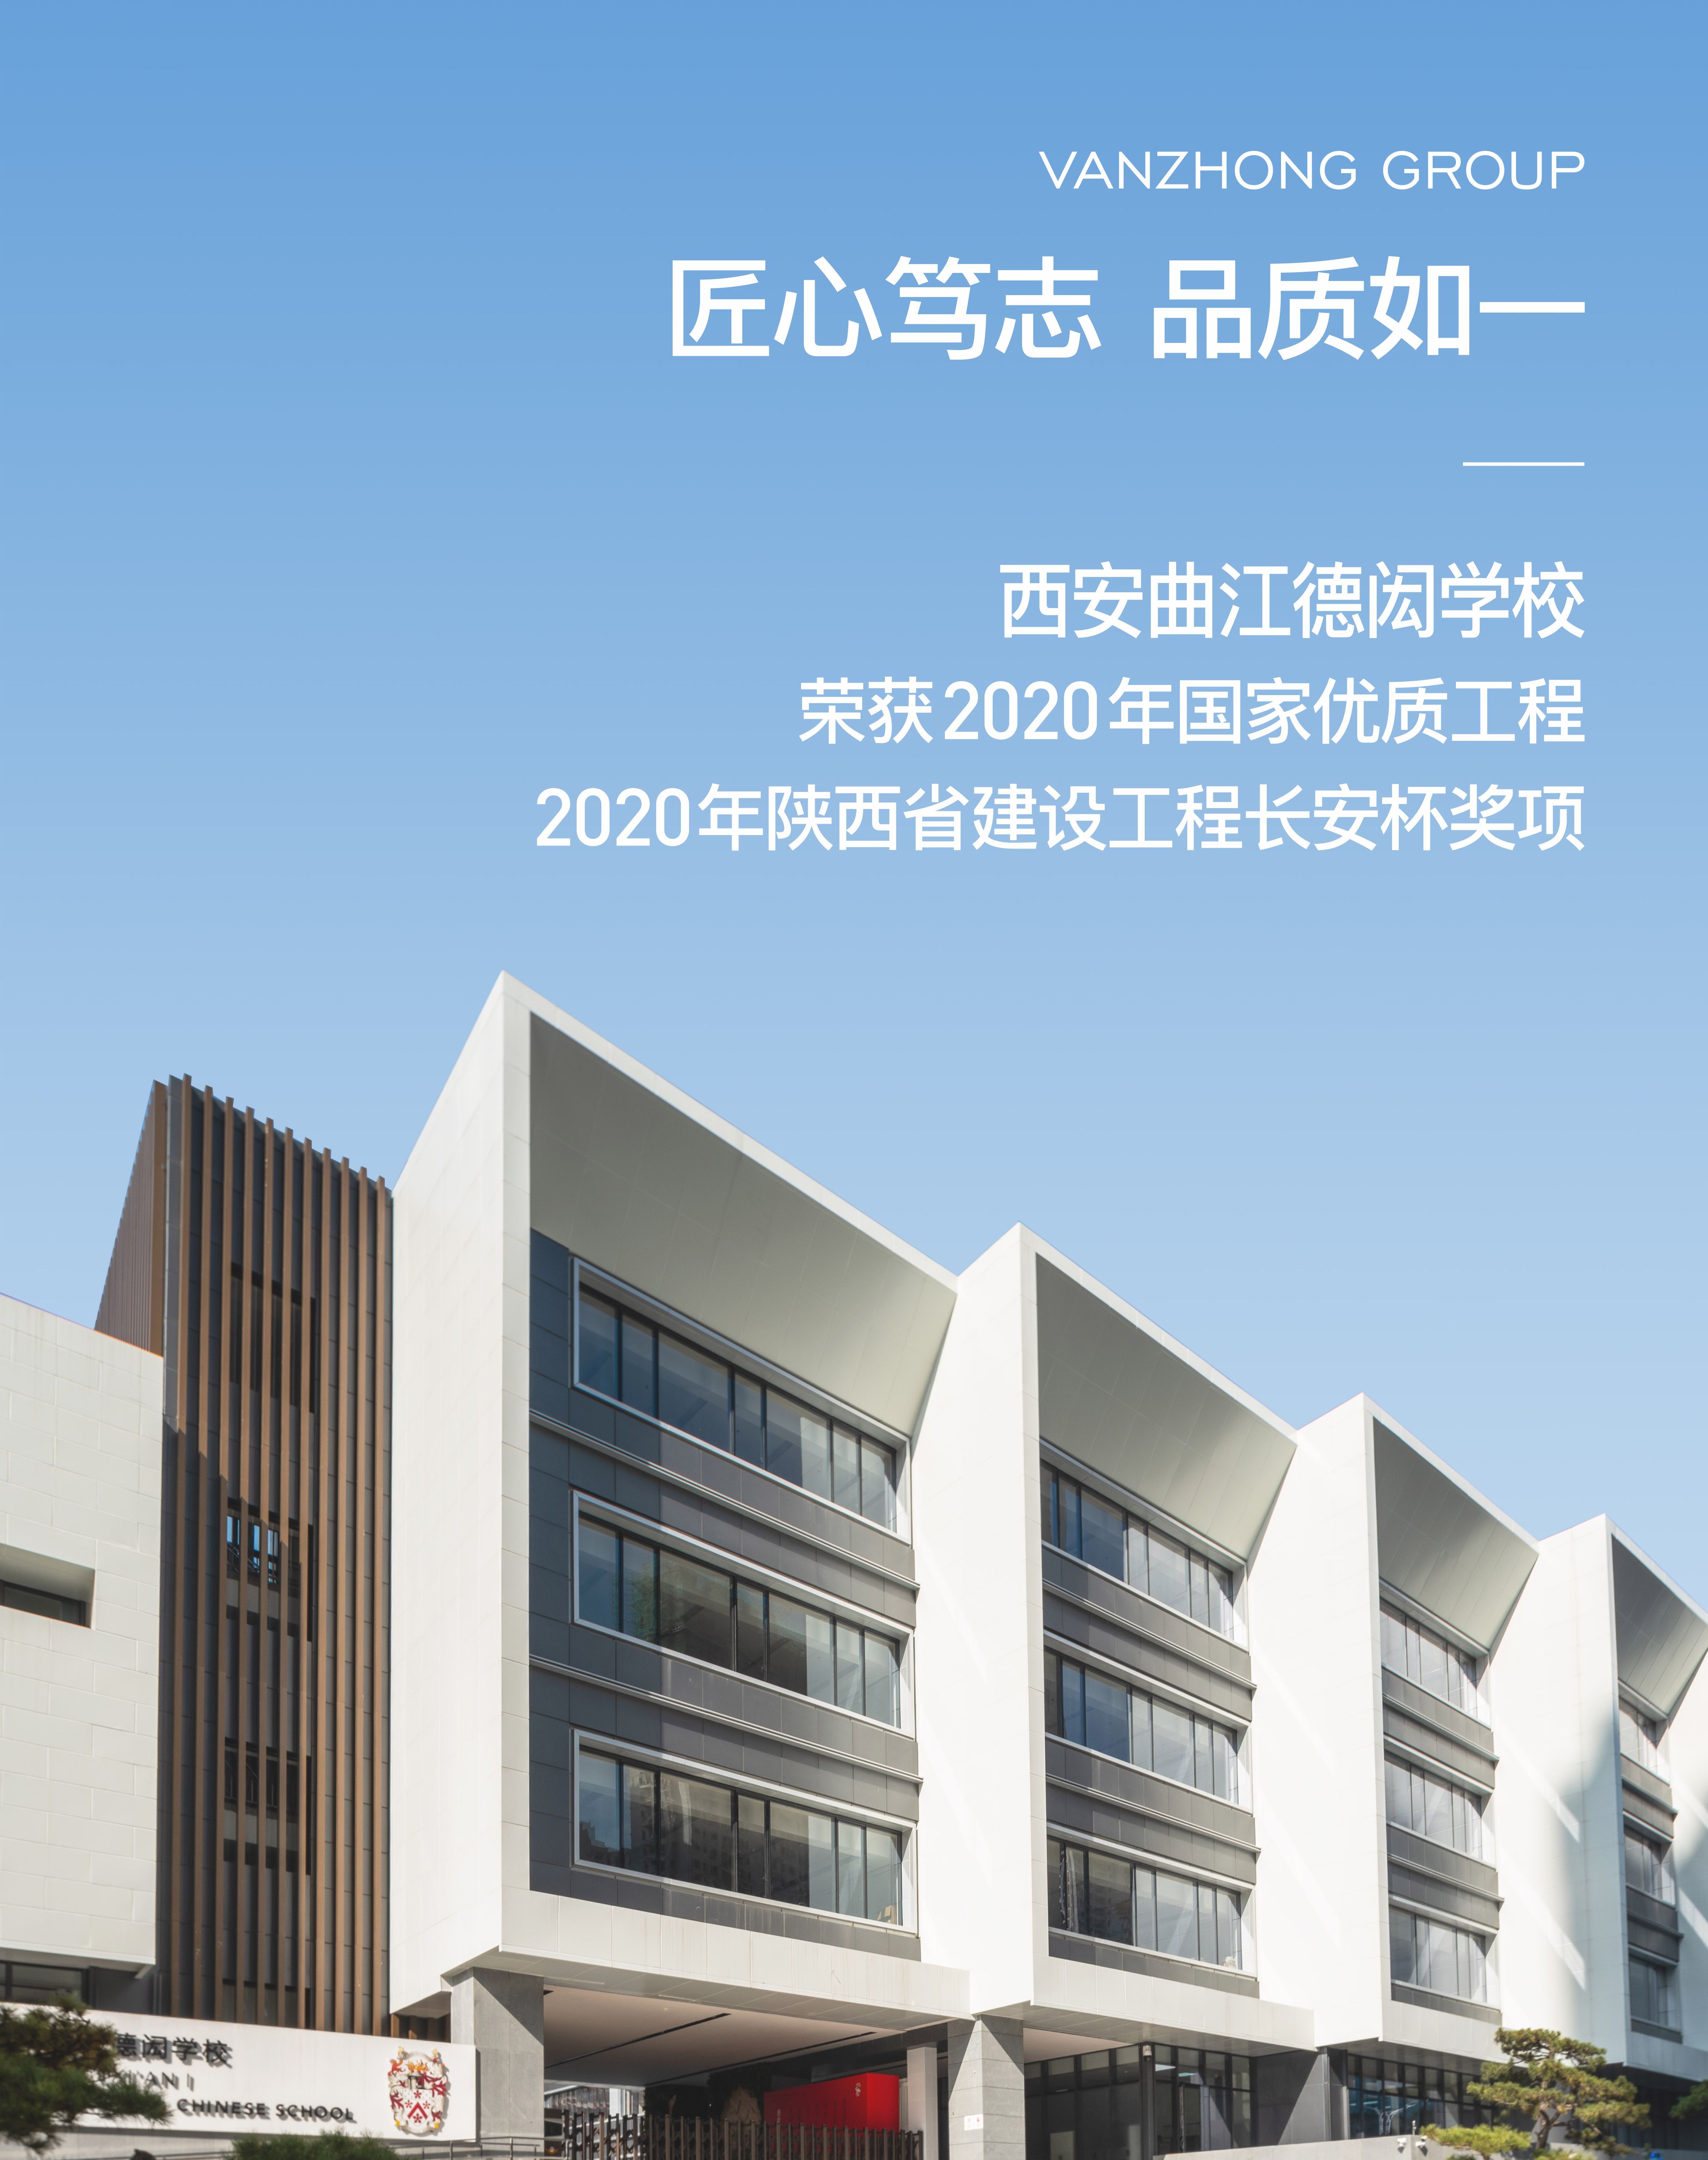 2020年 曲江· 德闳学校荣获陕西省建设工程长安杯奖 [ 国家优质工程 ]